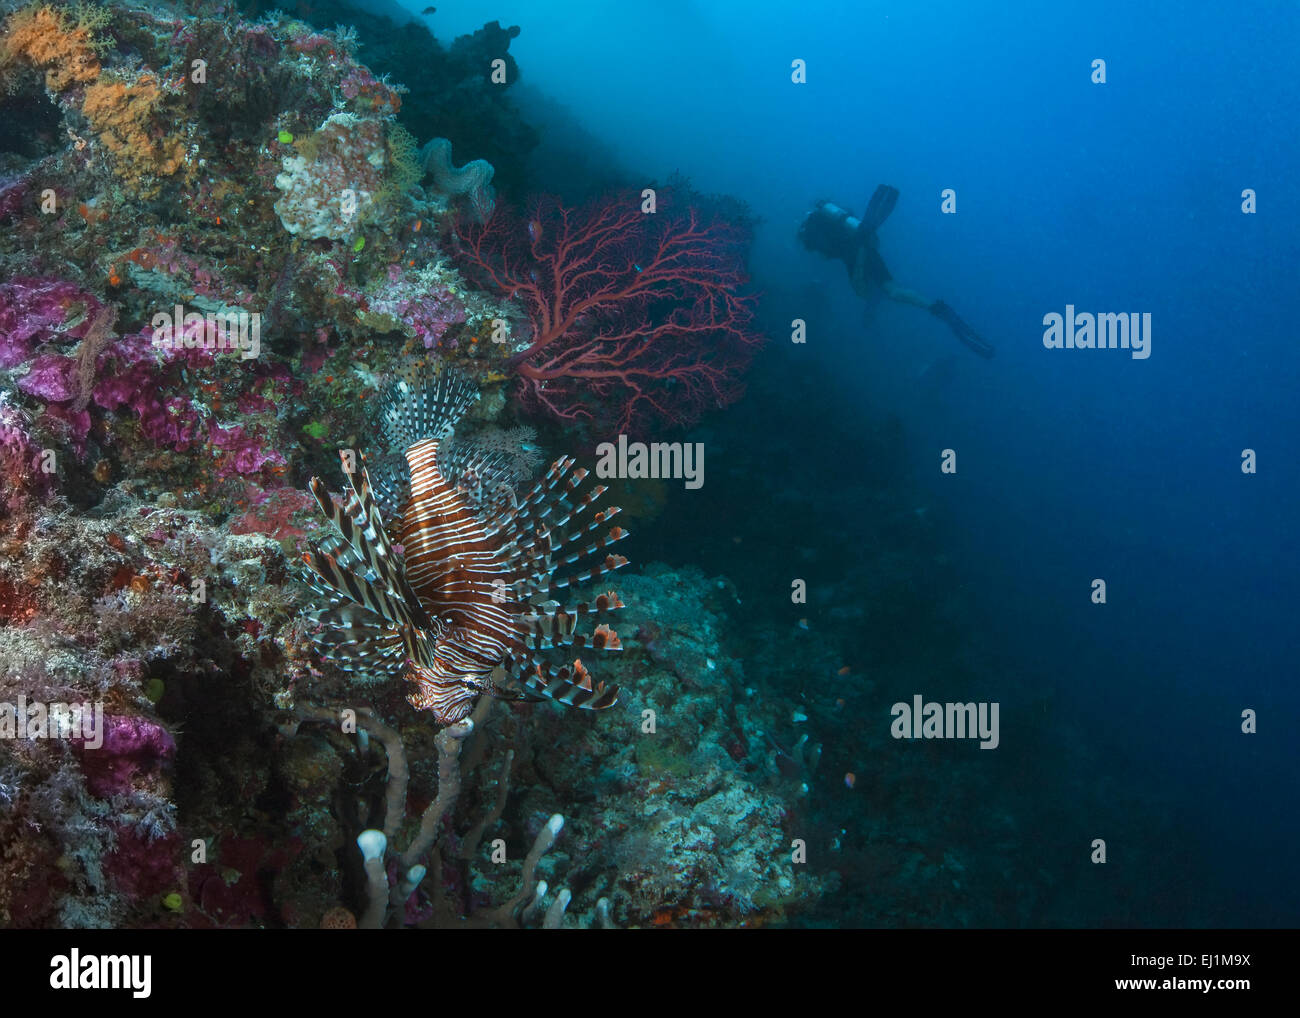 Poisson-papillon flamboyant camouflé parmi les habitants des récifs coralliens d'éviter la détection par un groupe de plongeurs d'explorer les récifs coralliens. Banque D'Images